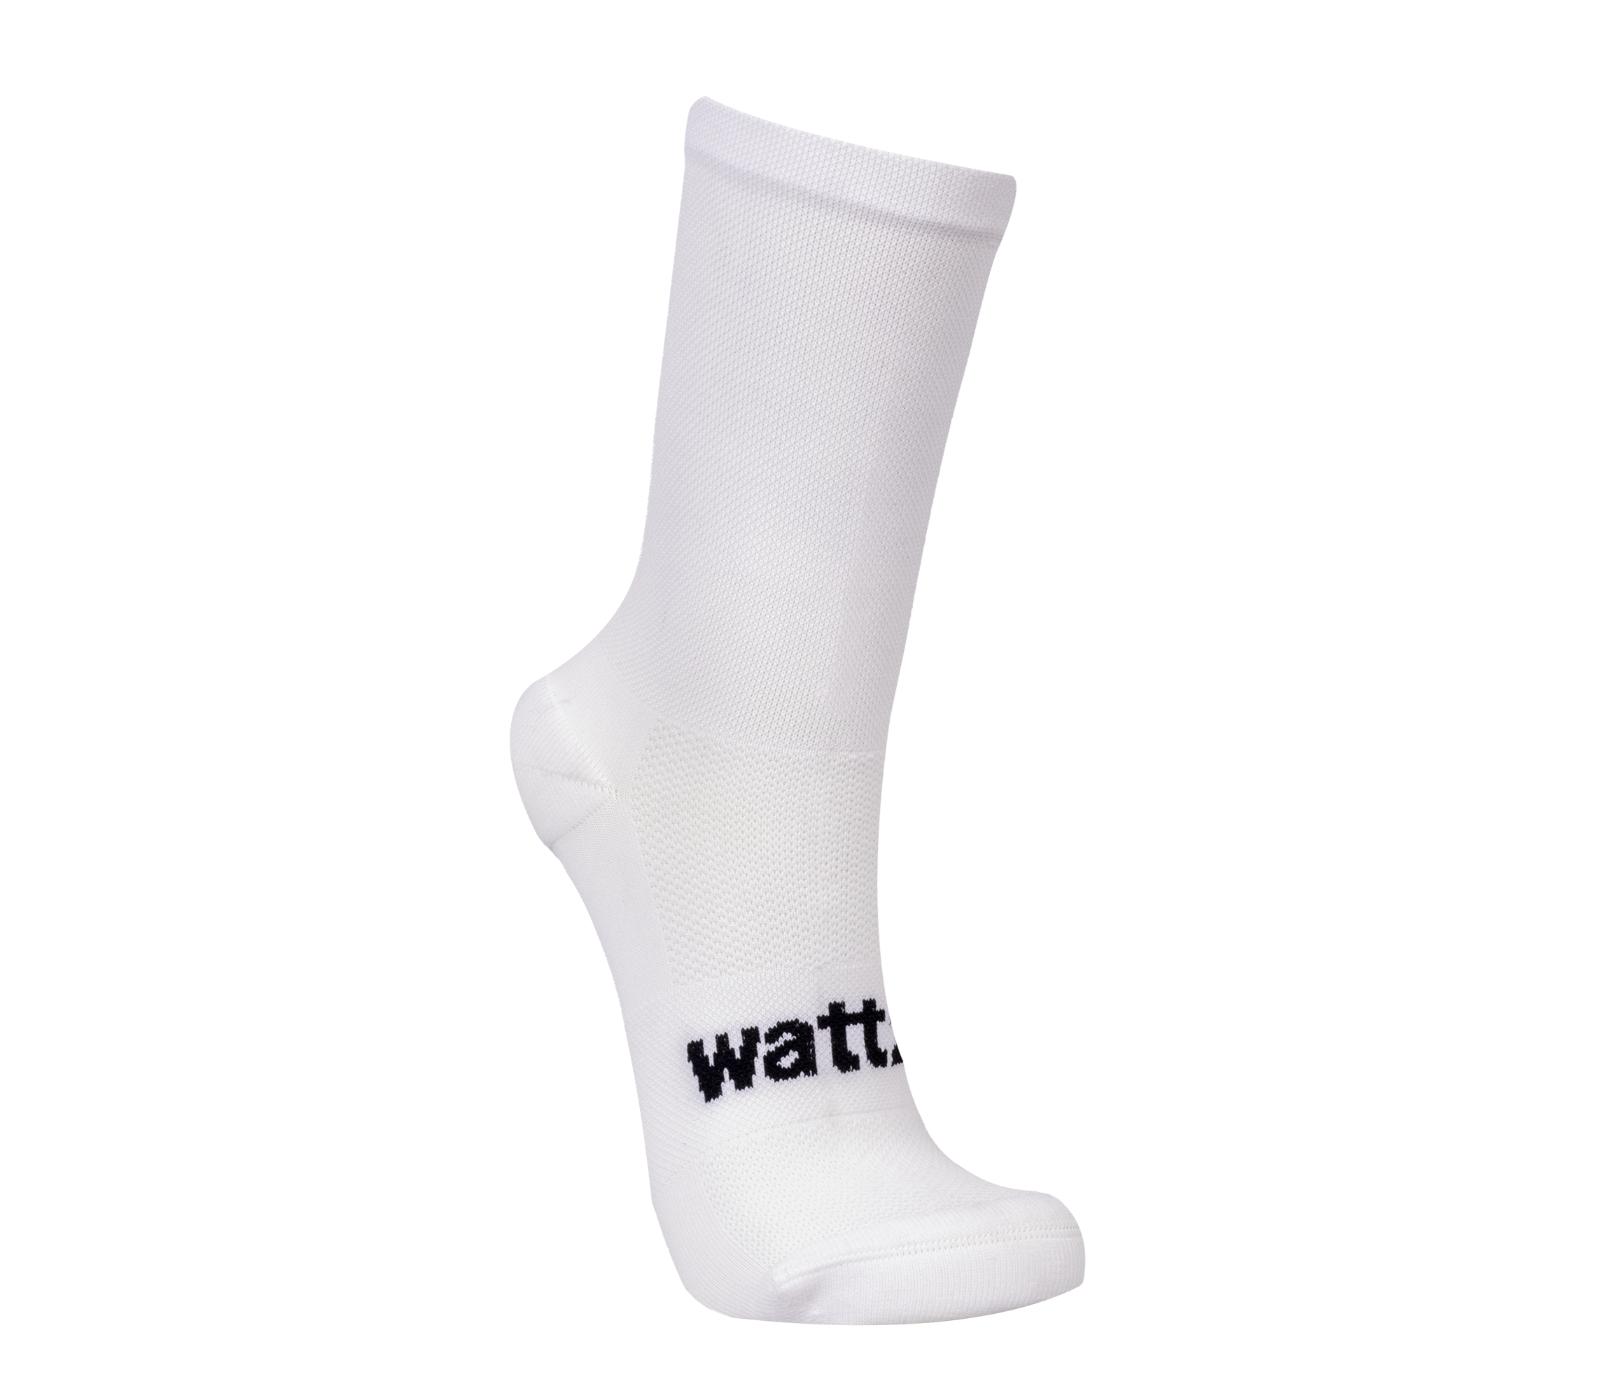 Wattz Knit White Unisex Socks